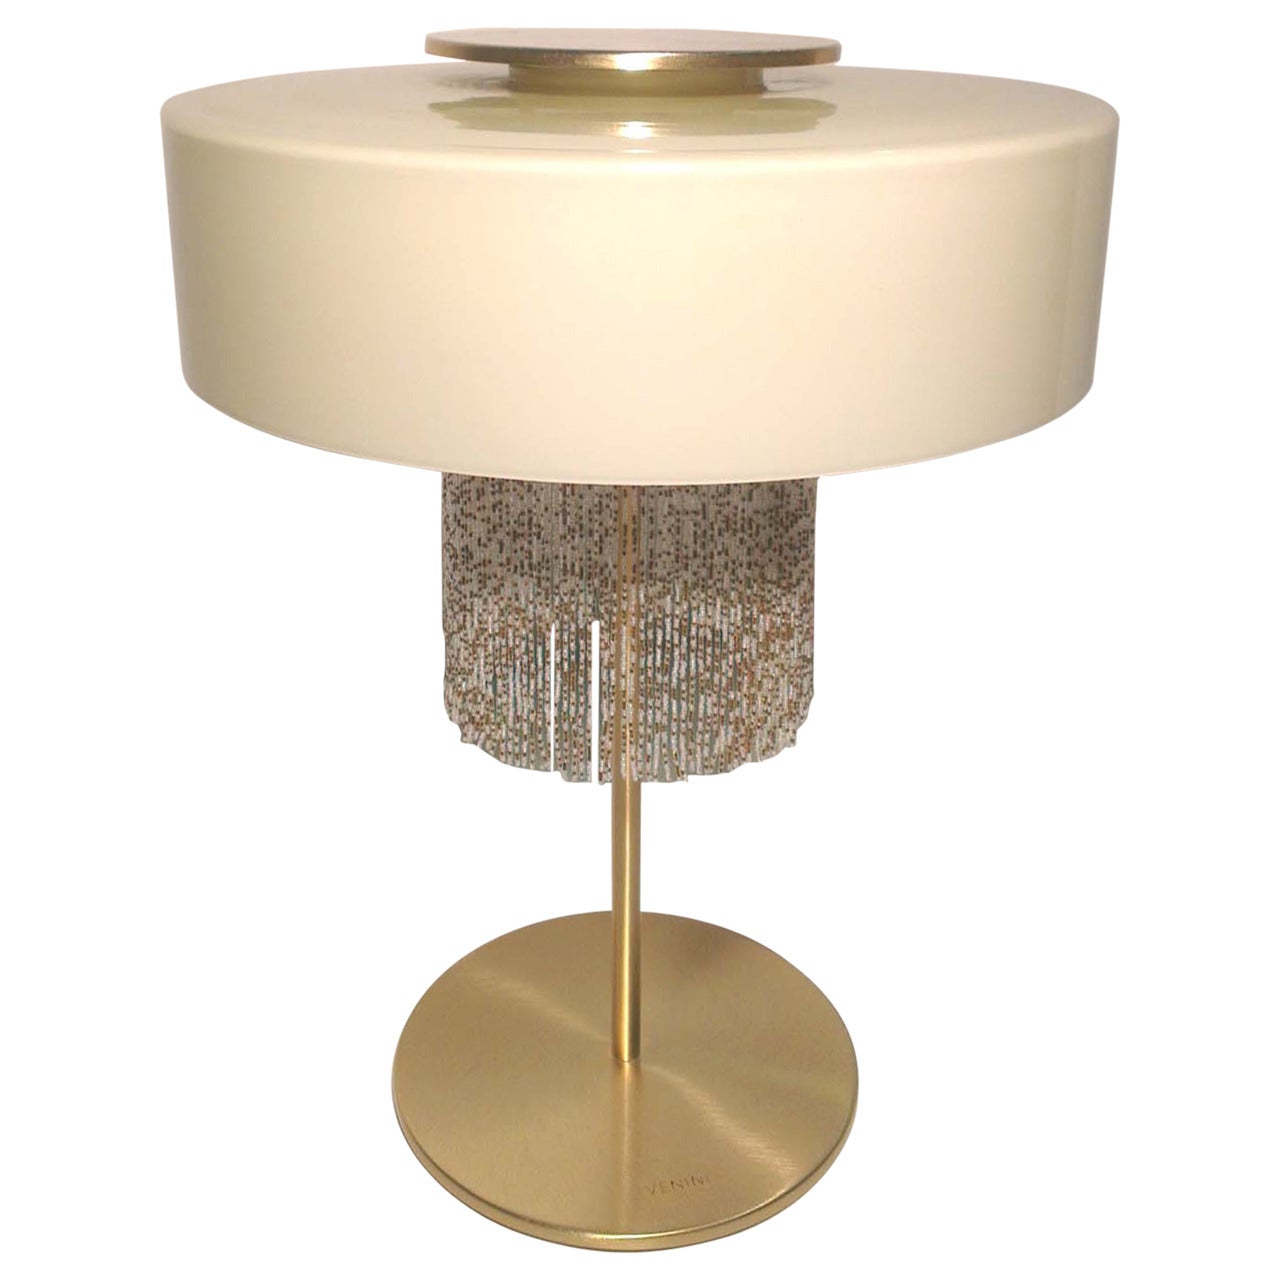 Table Lamp, "Contessa" by Venini For Sale